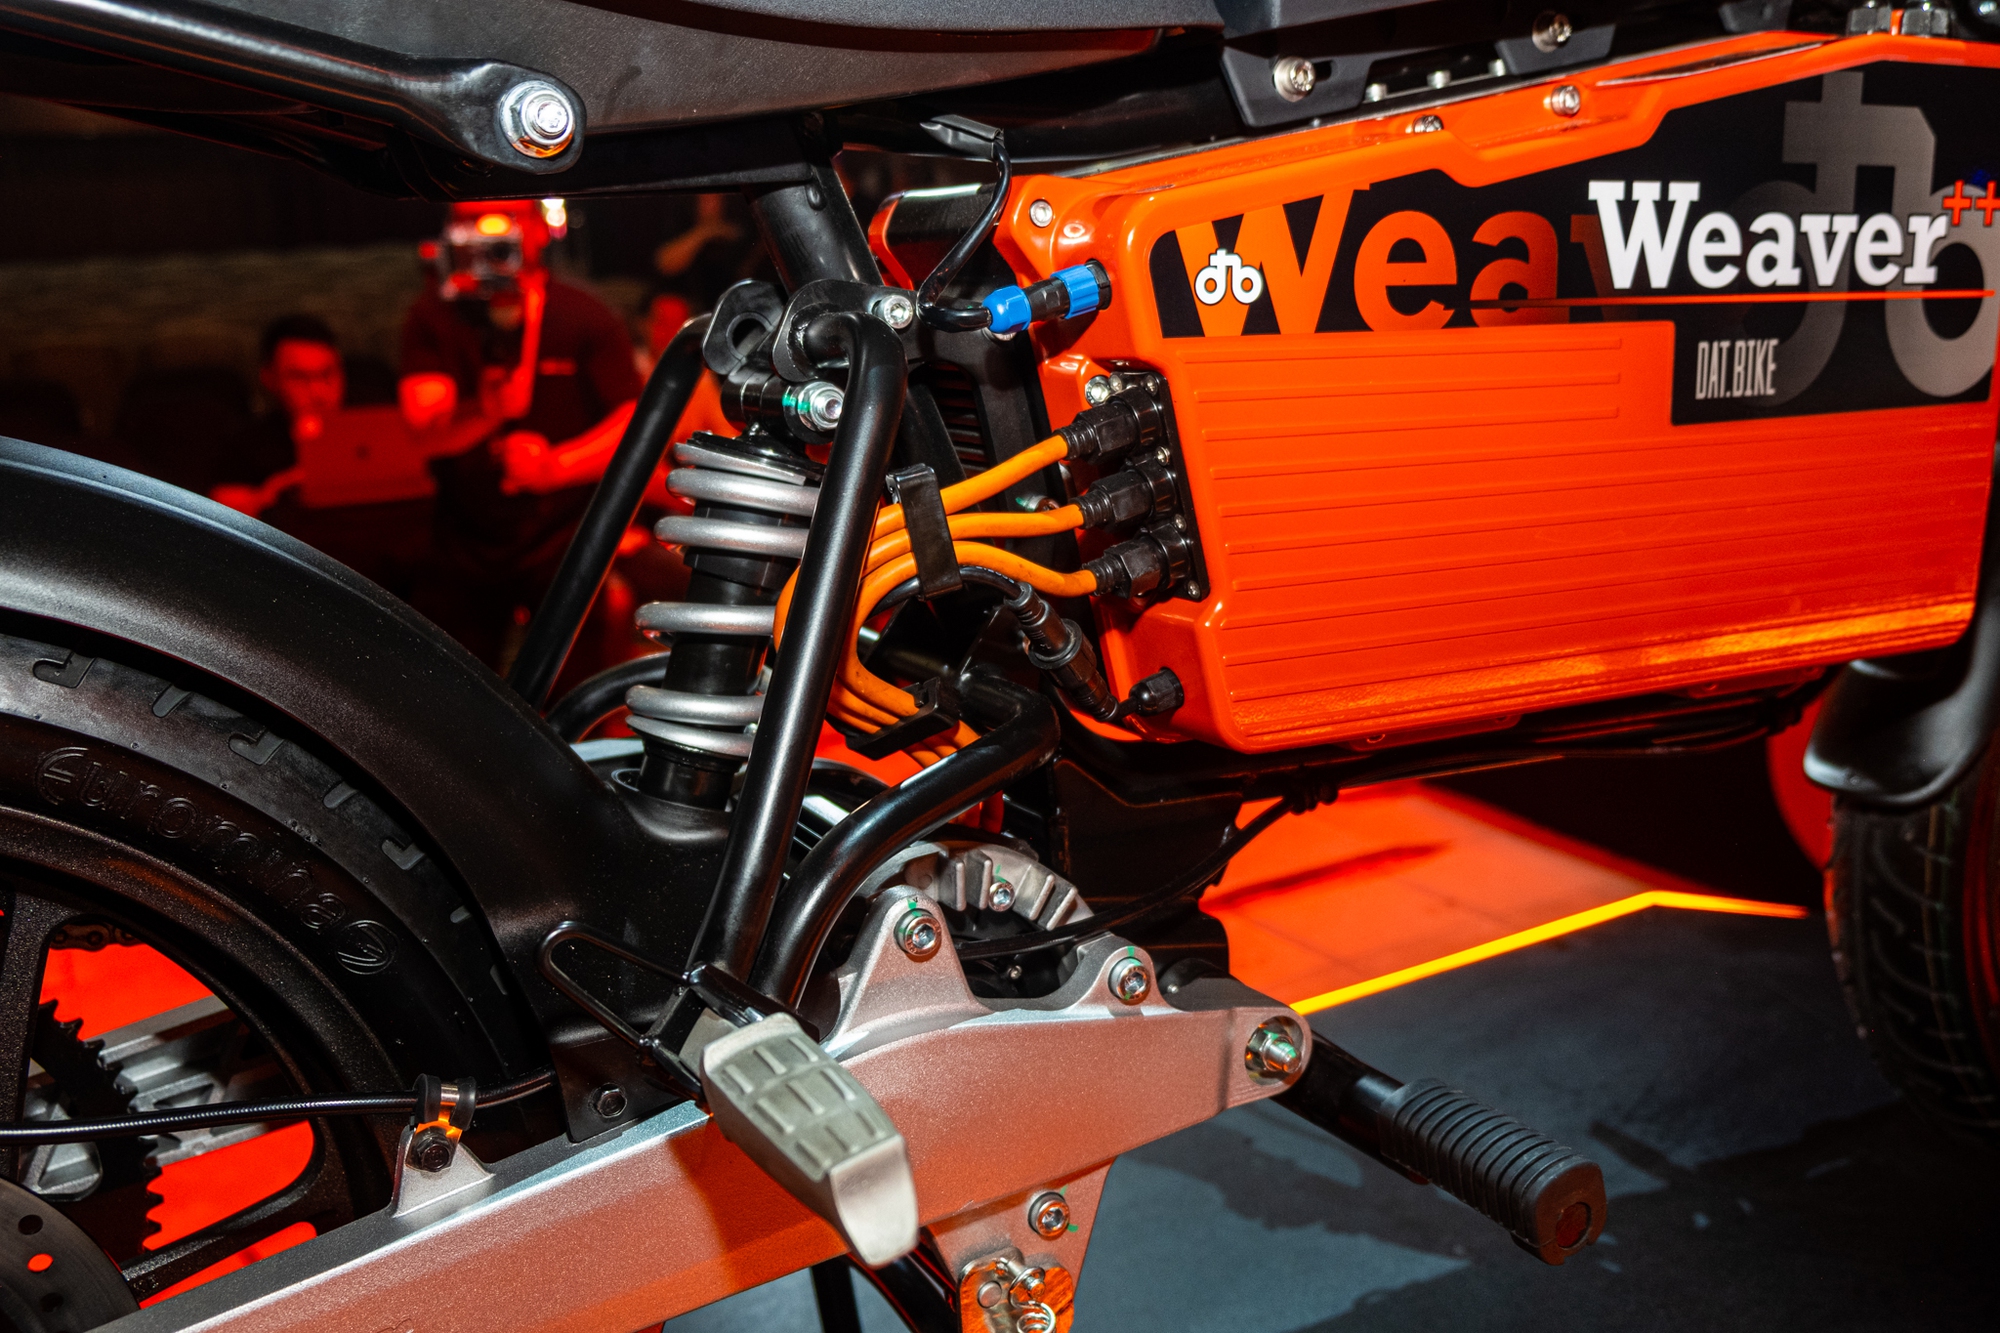 Ra mắt Dat Bike Weaver++: Giá 65,9 triệu đồng, dáng cổ điển, sạc nhanh chưa từng có tại Việt Nam - Ảnh 4.